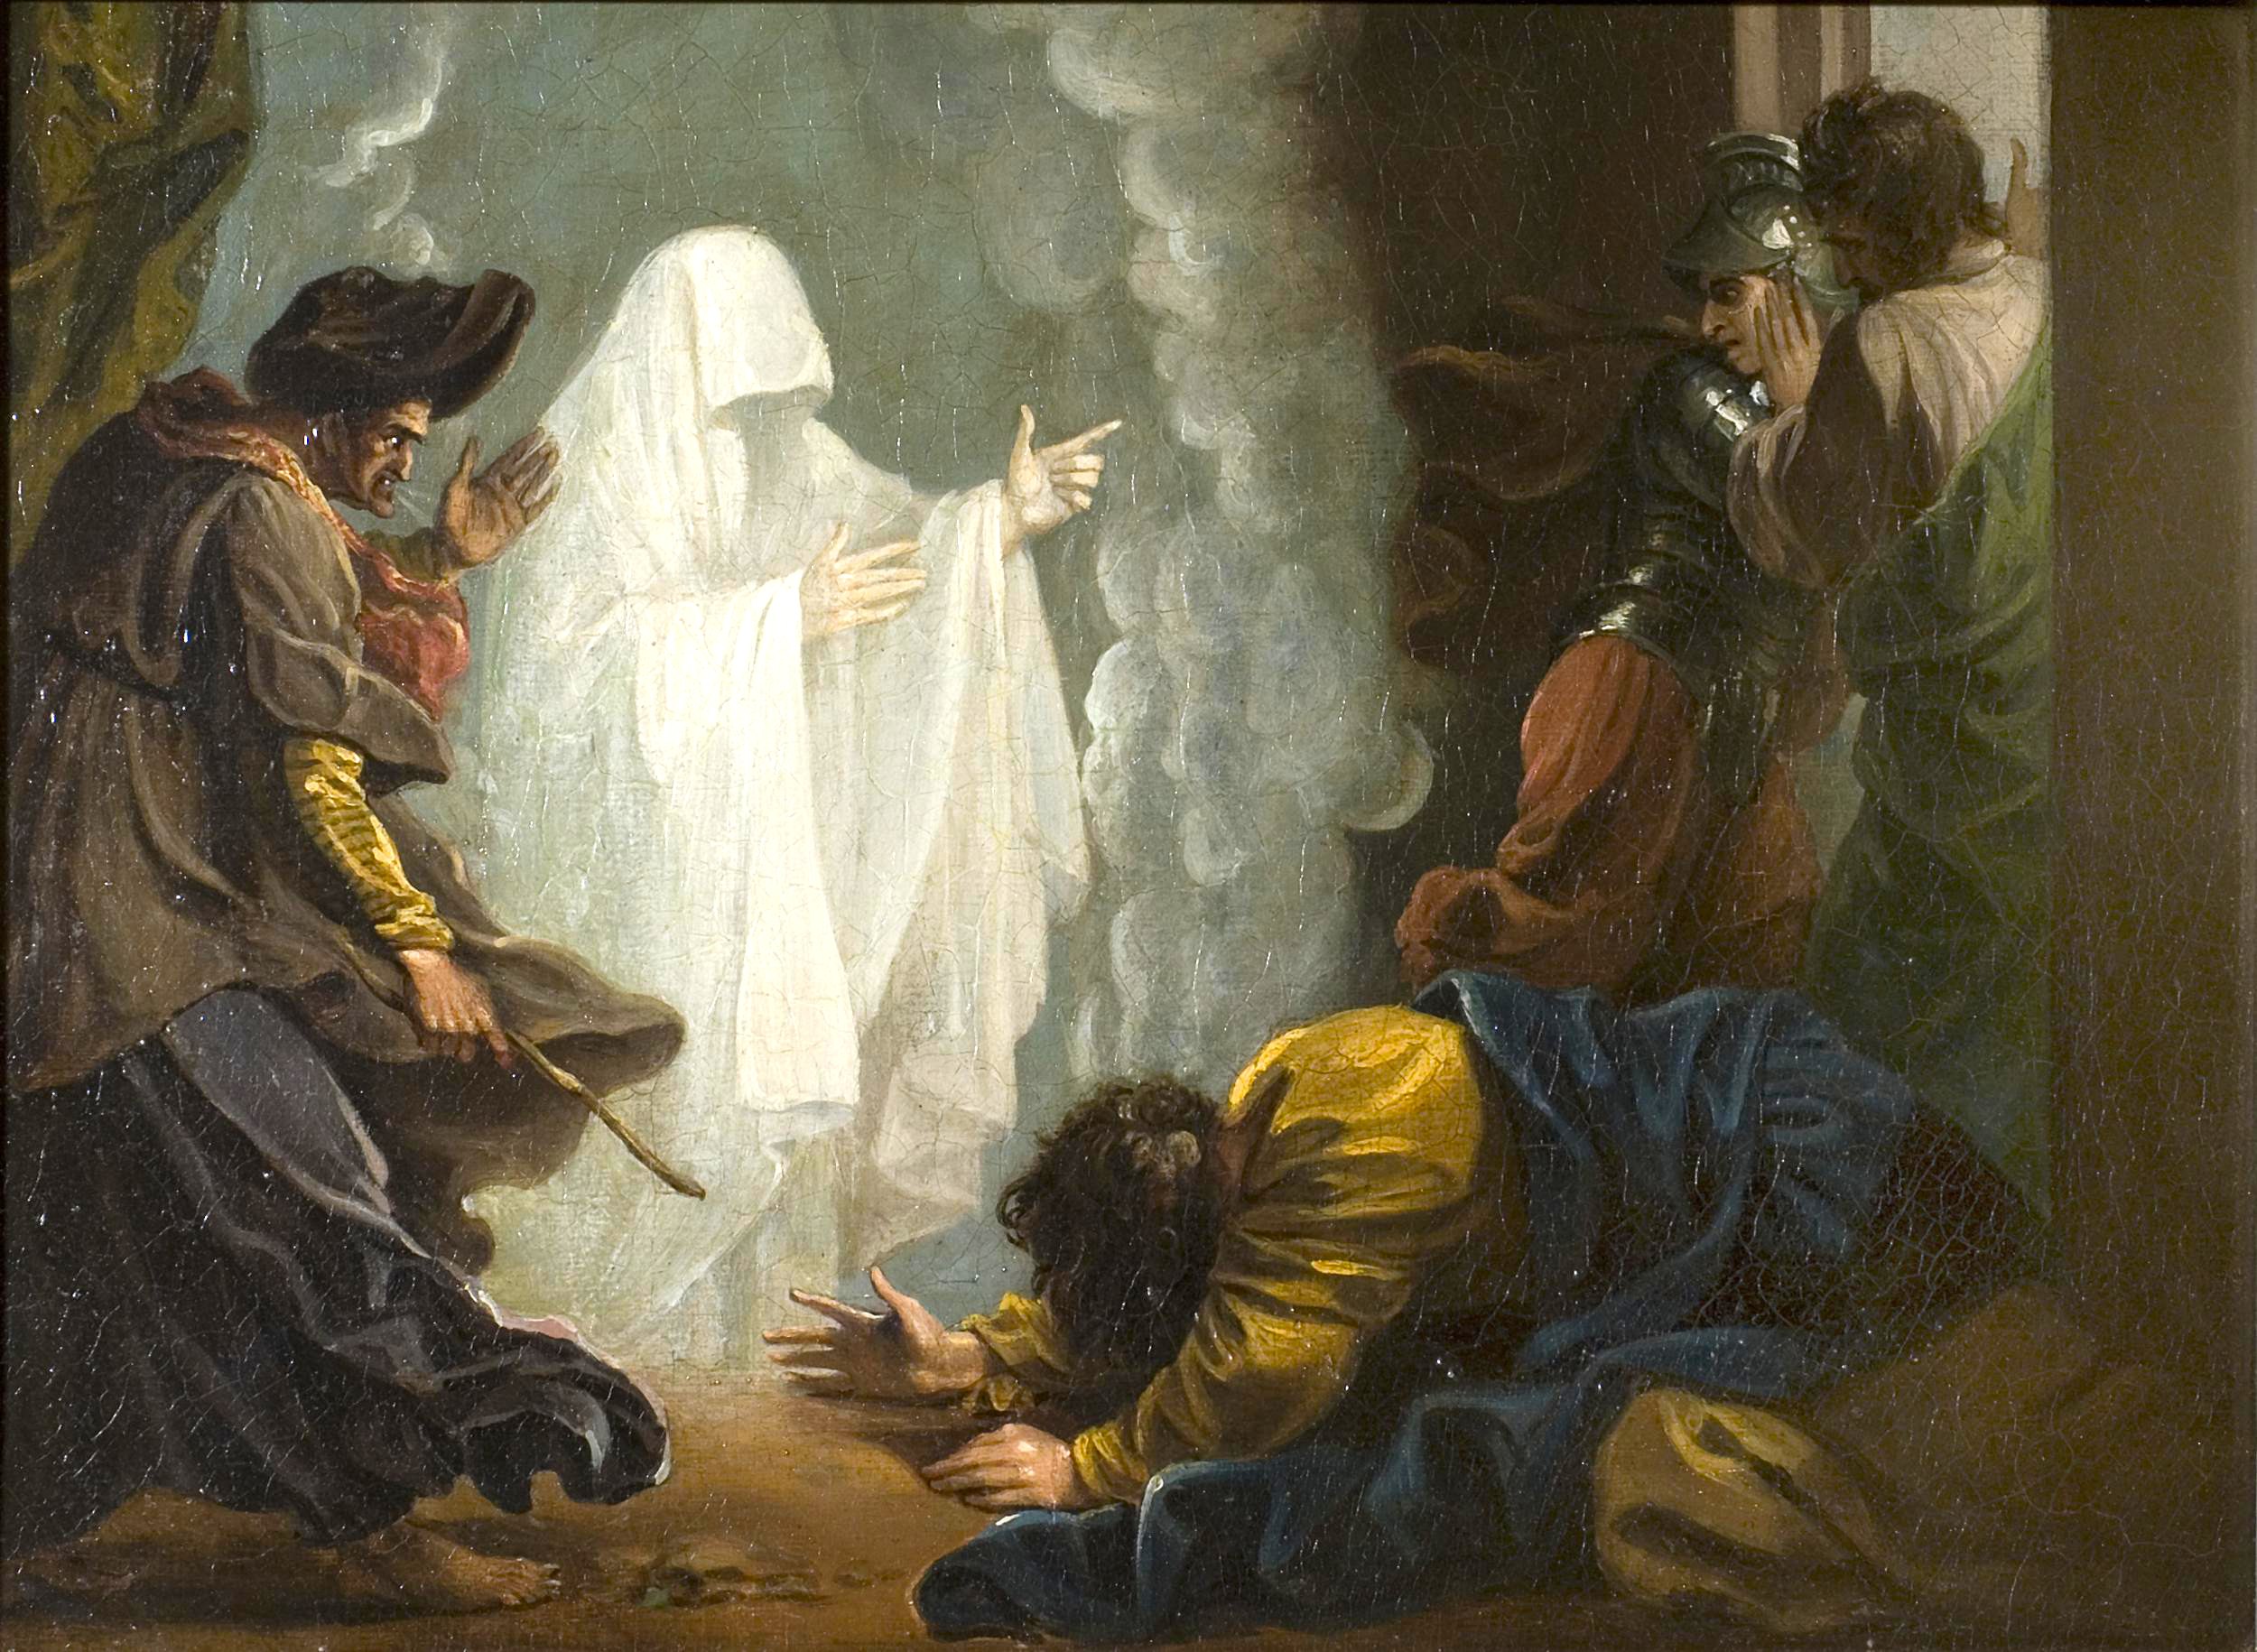 Alt=La sorcière d'Endor a convoqué l'âme d'une personne décédée ! (voir 1 Samuel 28:3-20).